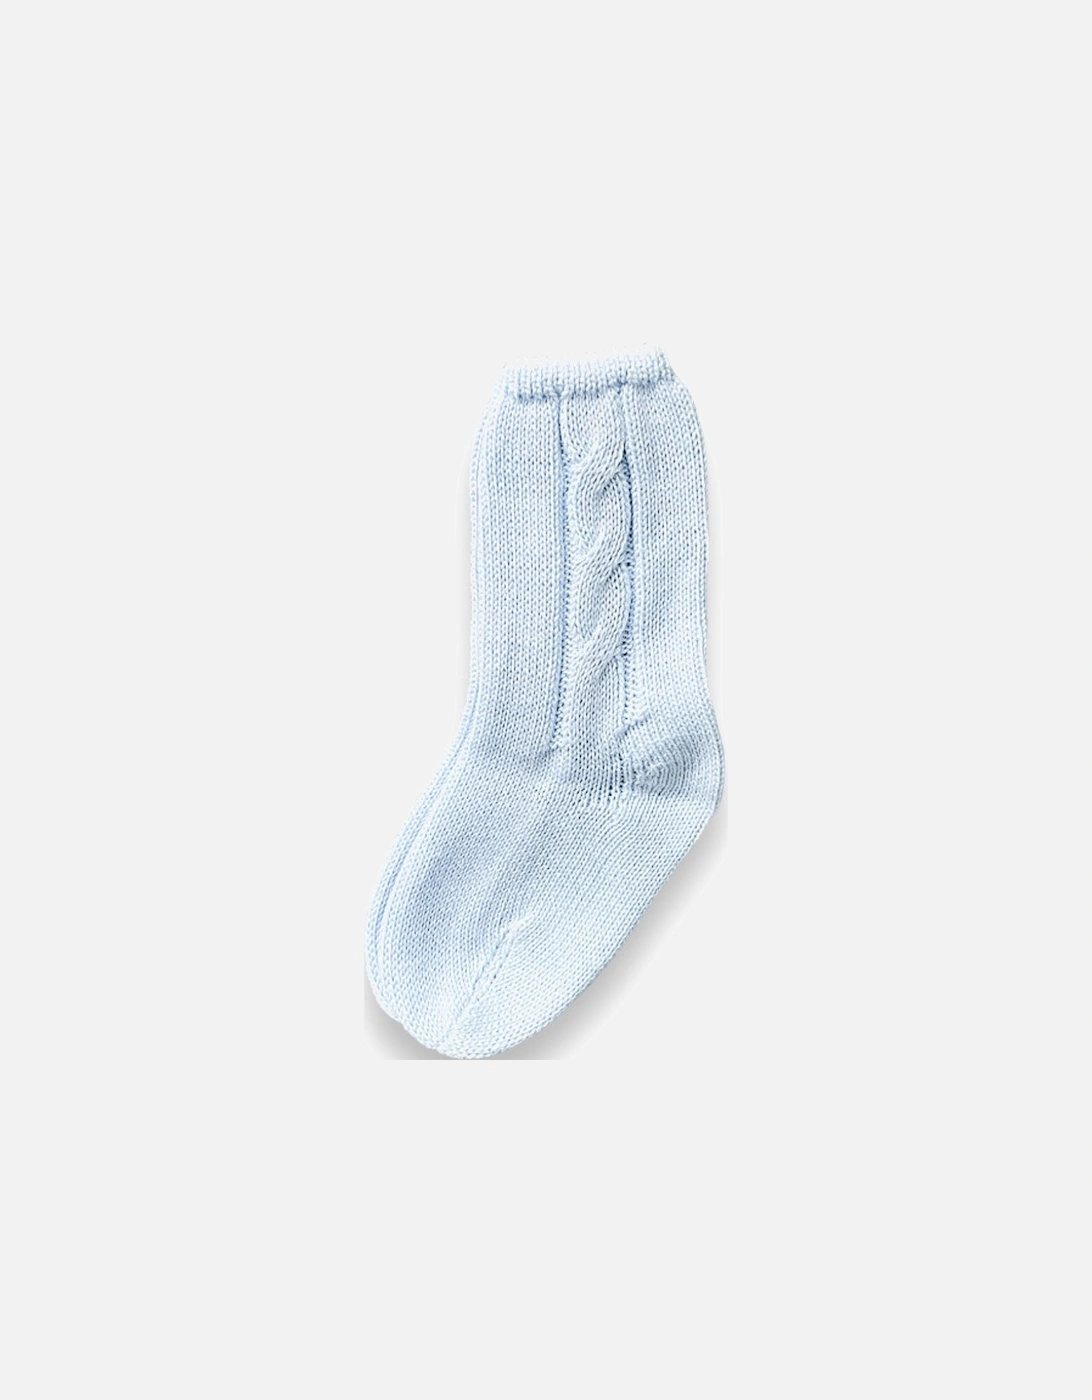 Blue Knit Short Socks, 6 of 5